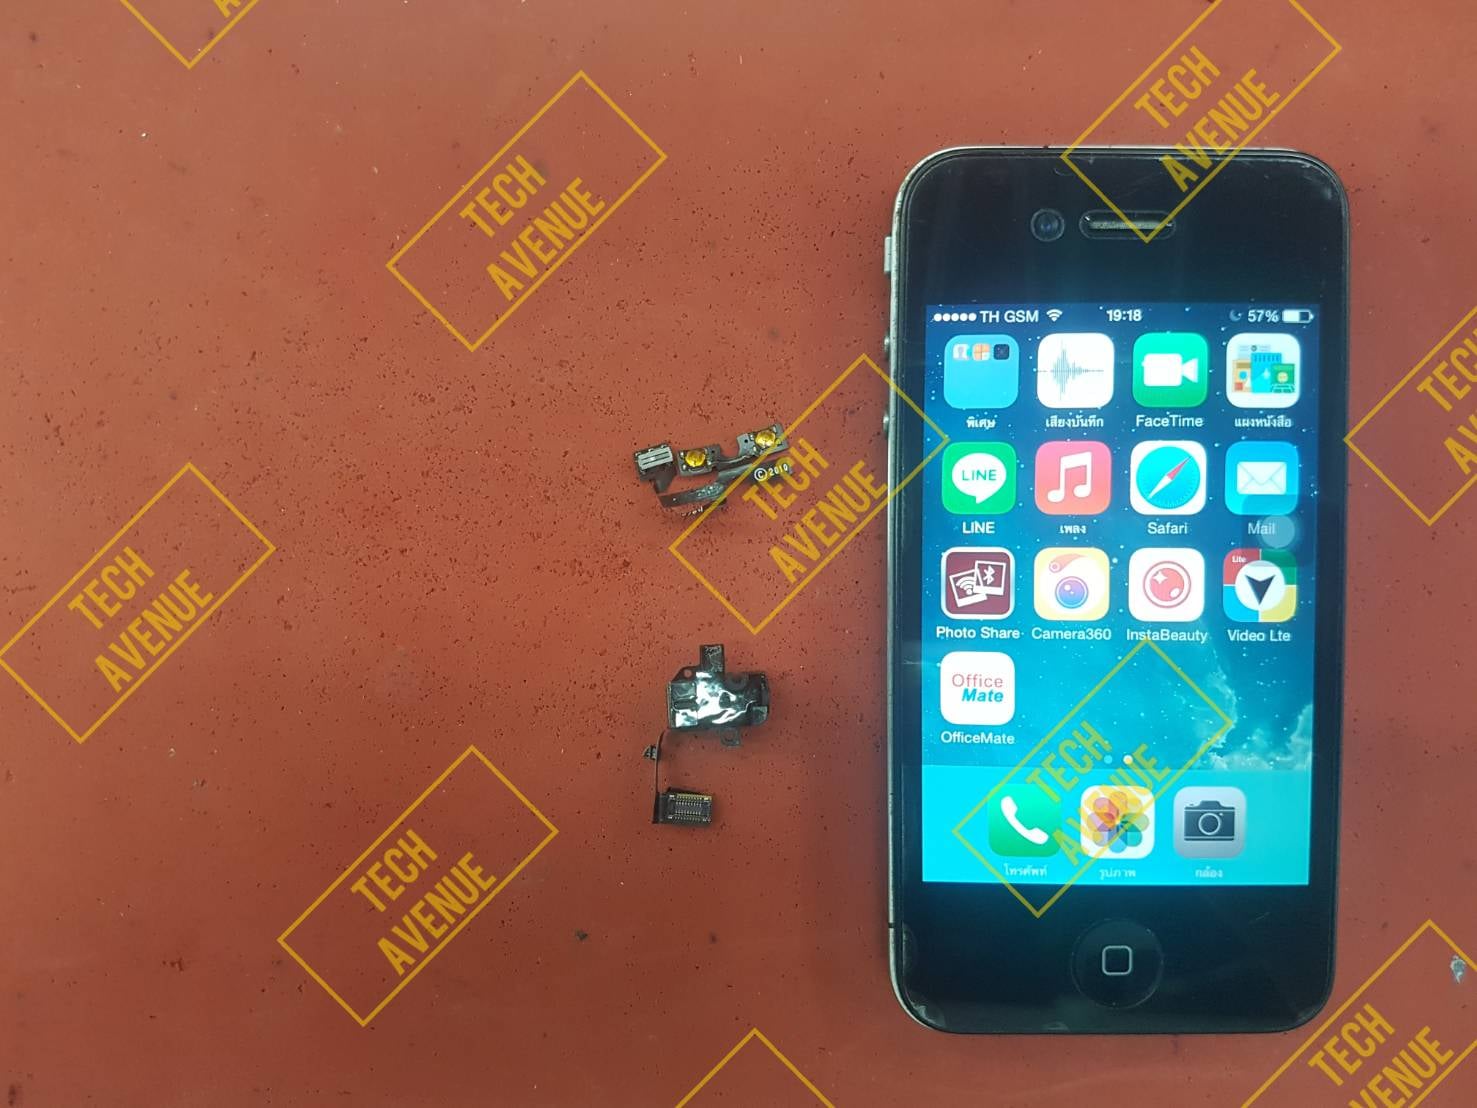 ไอโฟน(iPhone) wifi เสีย หาร้านซ่อมที่ไหนดี มีรับประกันหลังการซ่อม